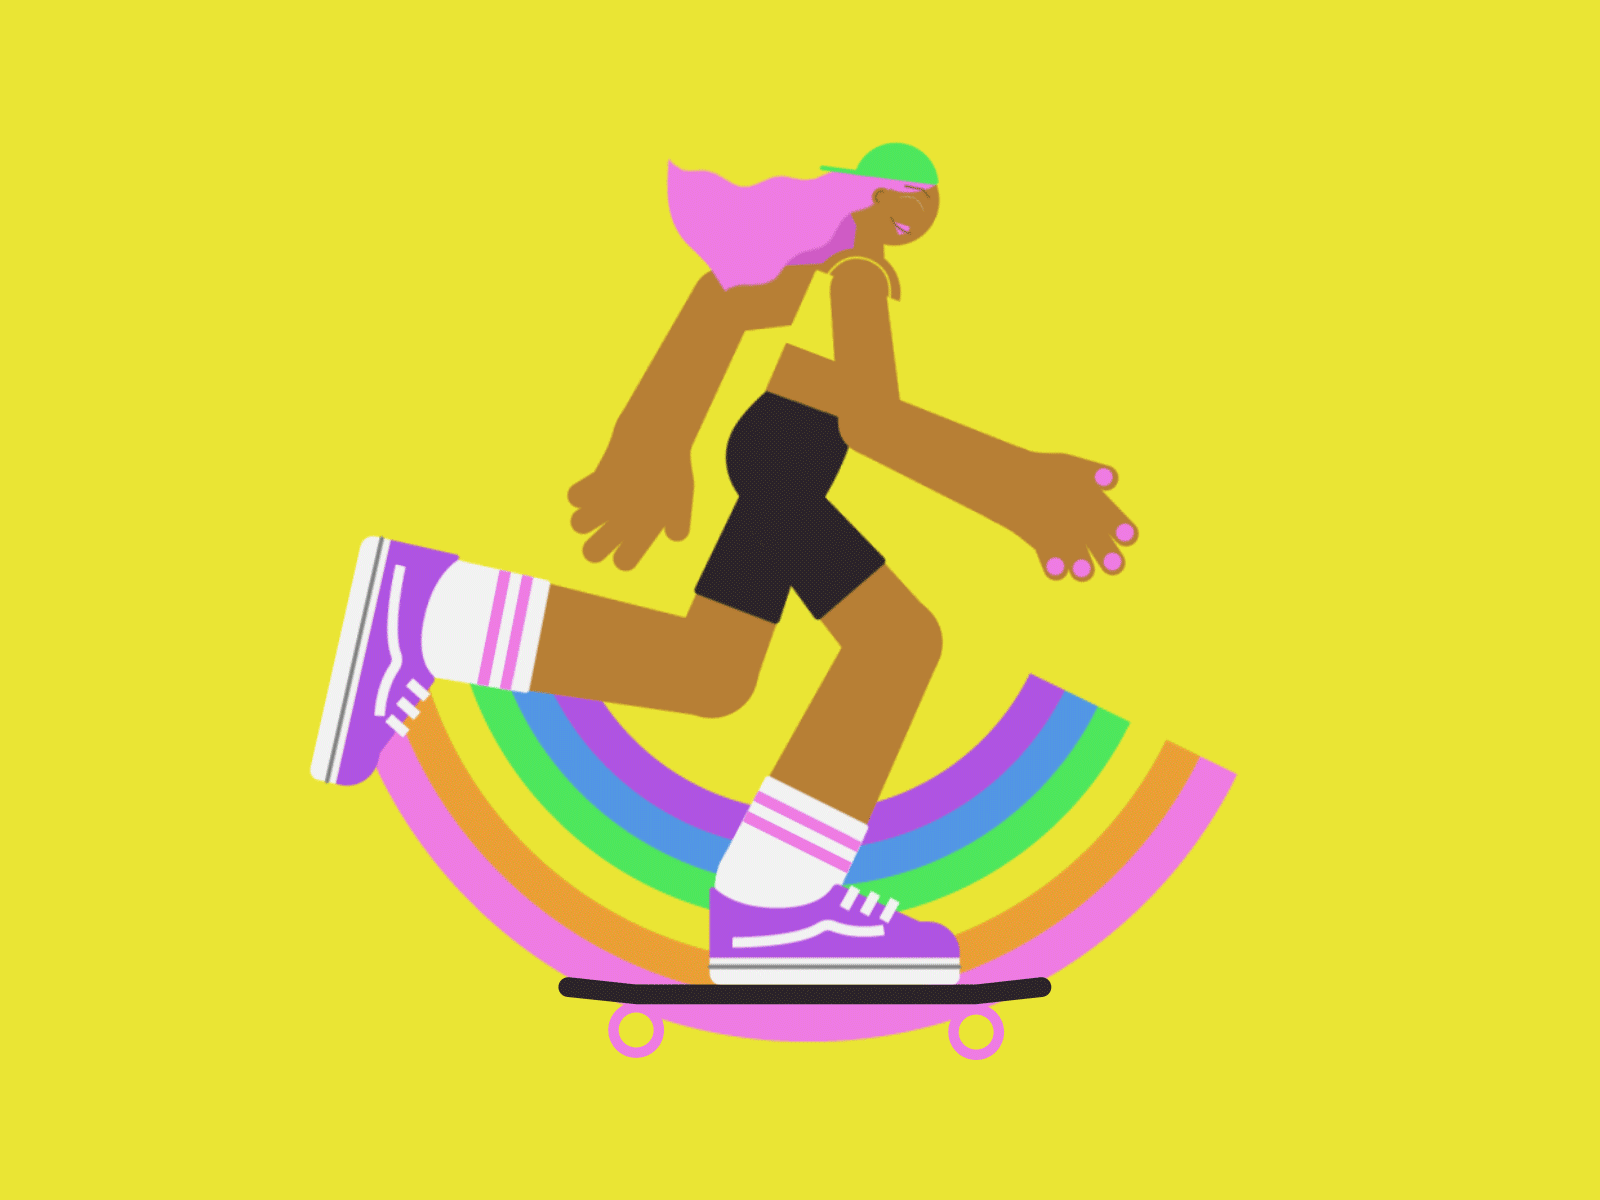 Skateboarder 2d 2danimation after effects character animation character design character rigging duik illustrator lgbtq pride rainbow skate skateboard skateboarder skating